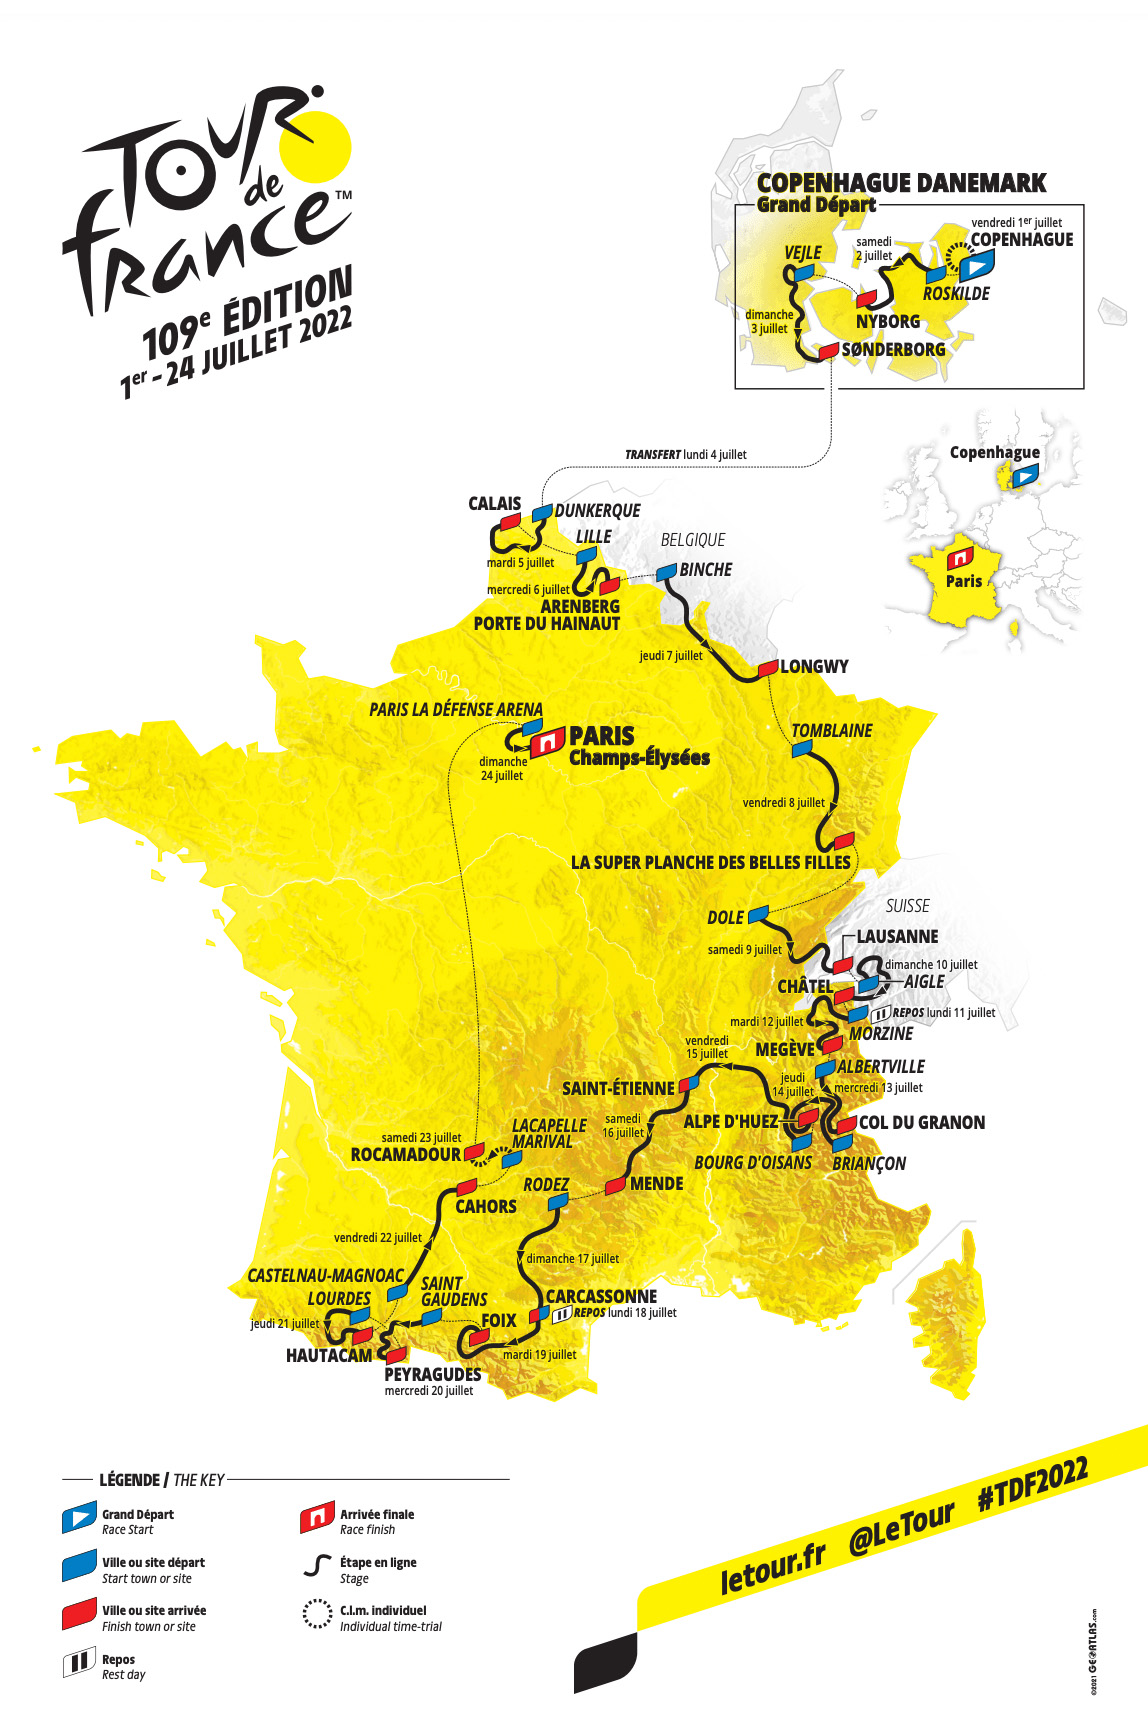 Voorbeschouwing etappes Tour de France 2022